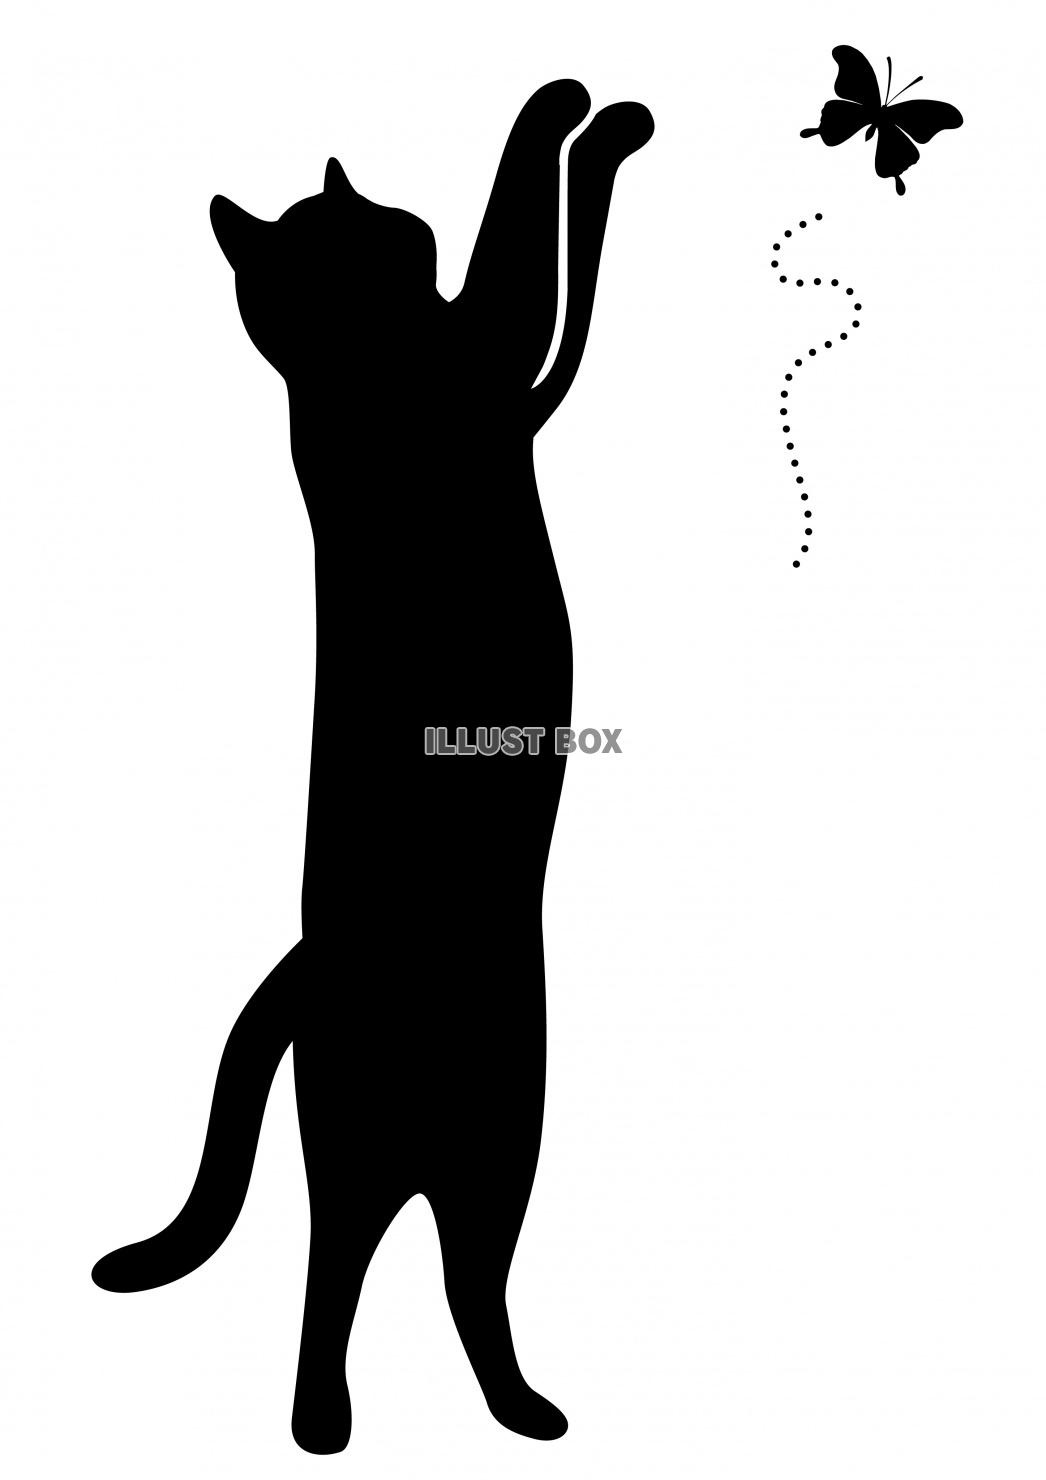 無料イラスト 猫 シルエット 黒猫 蝶々と遊ぶネコ